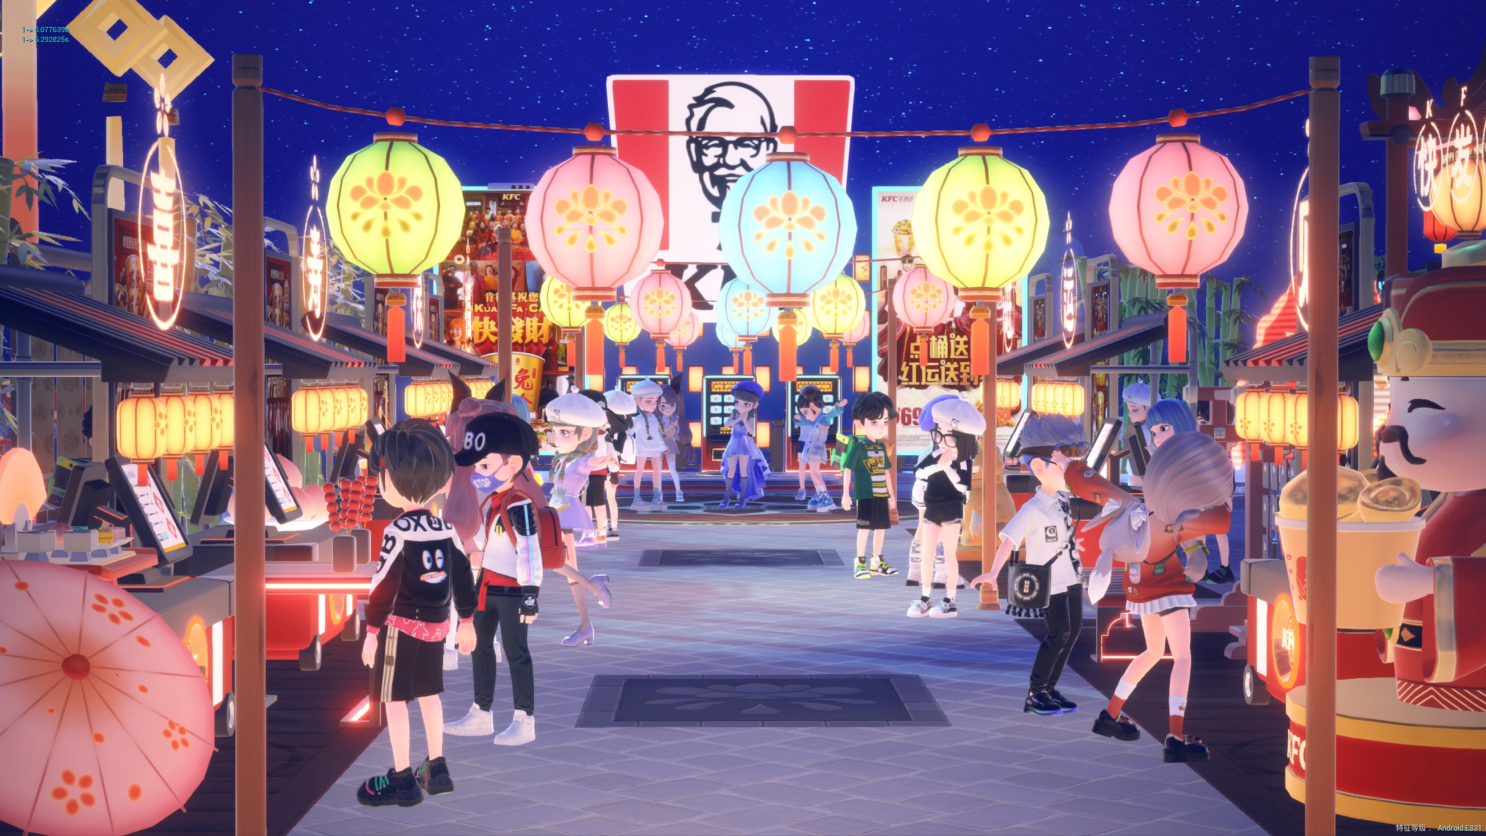 KFC Temple Fair Food Court Lanterns